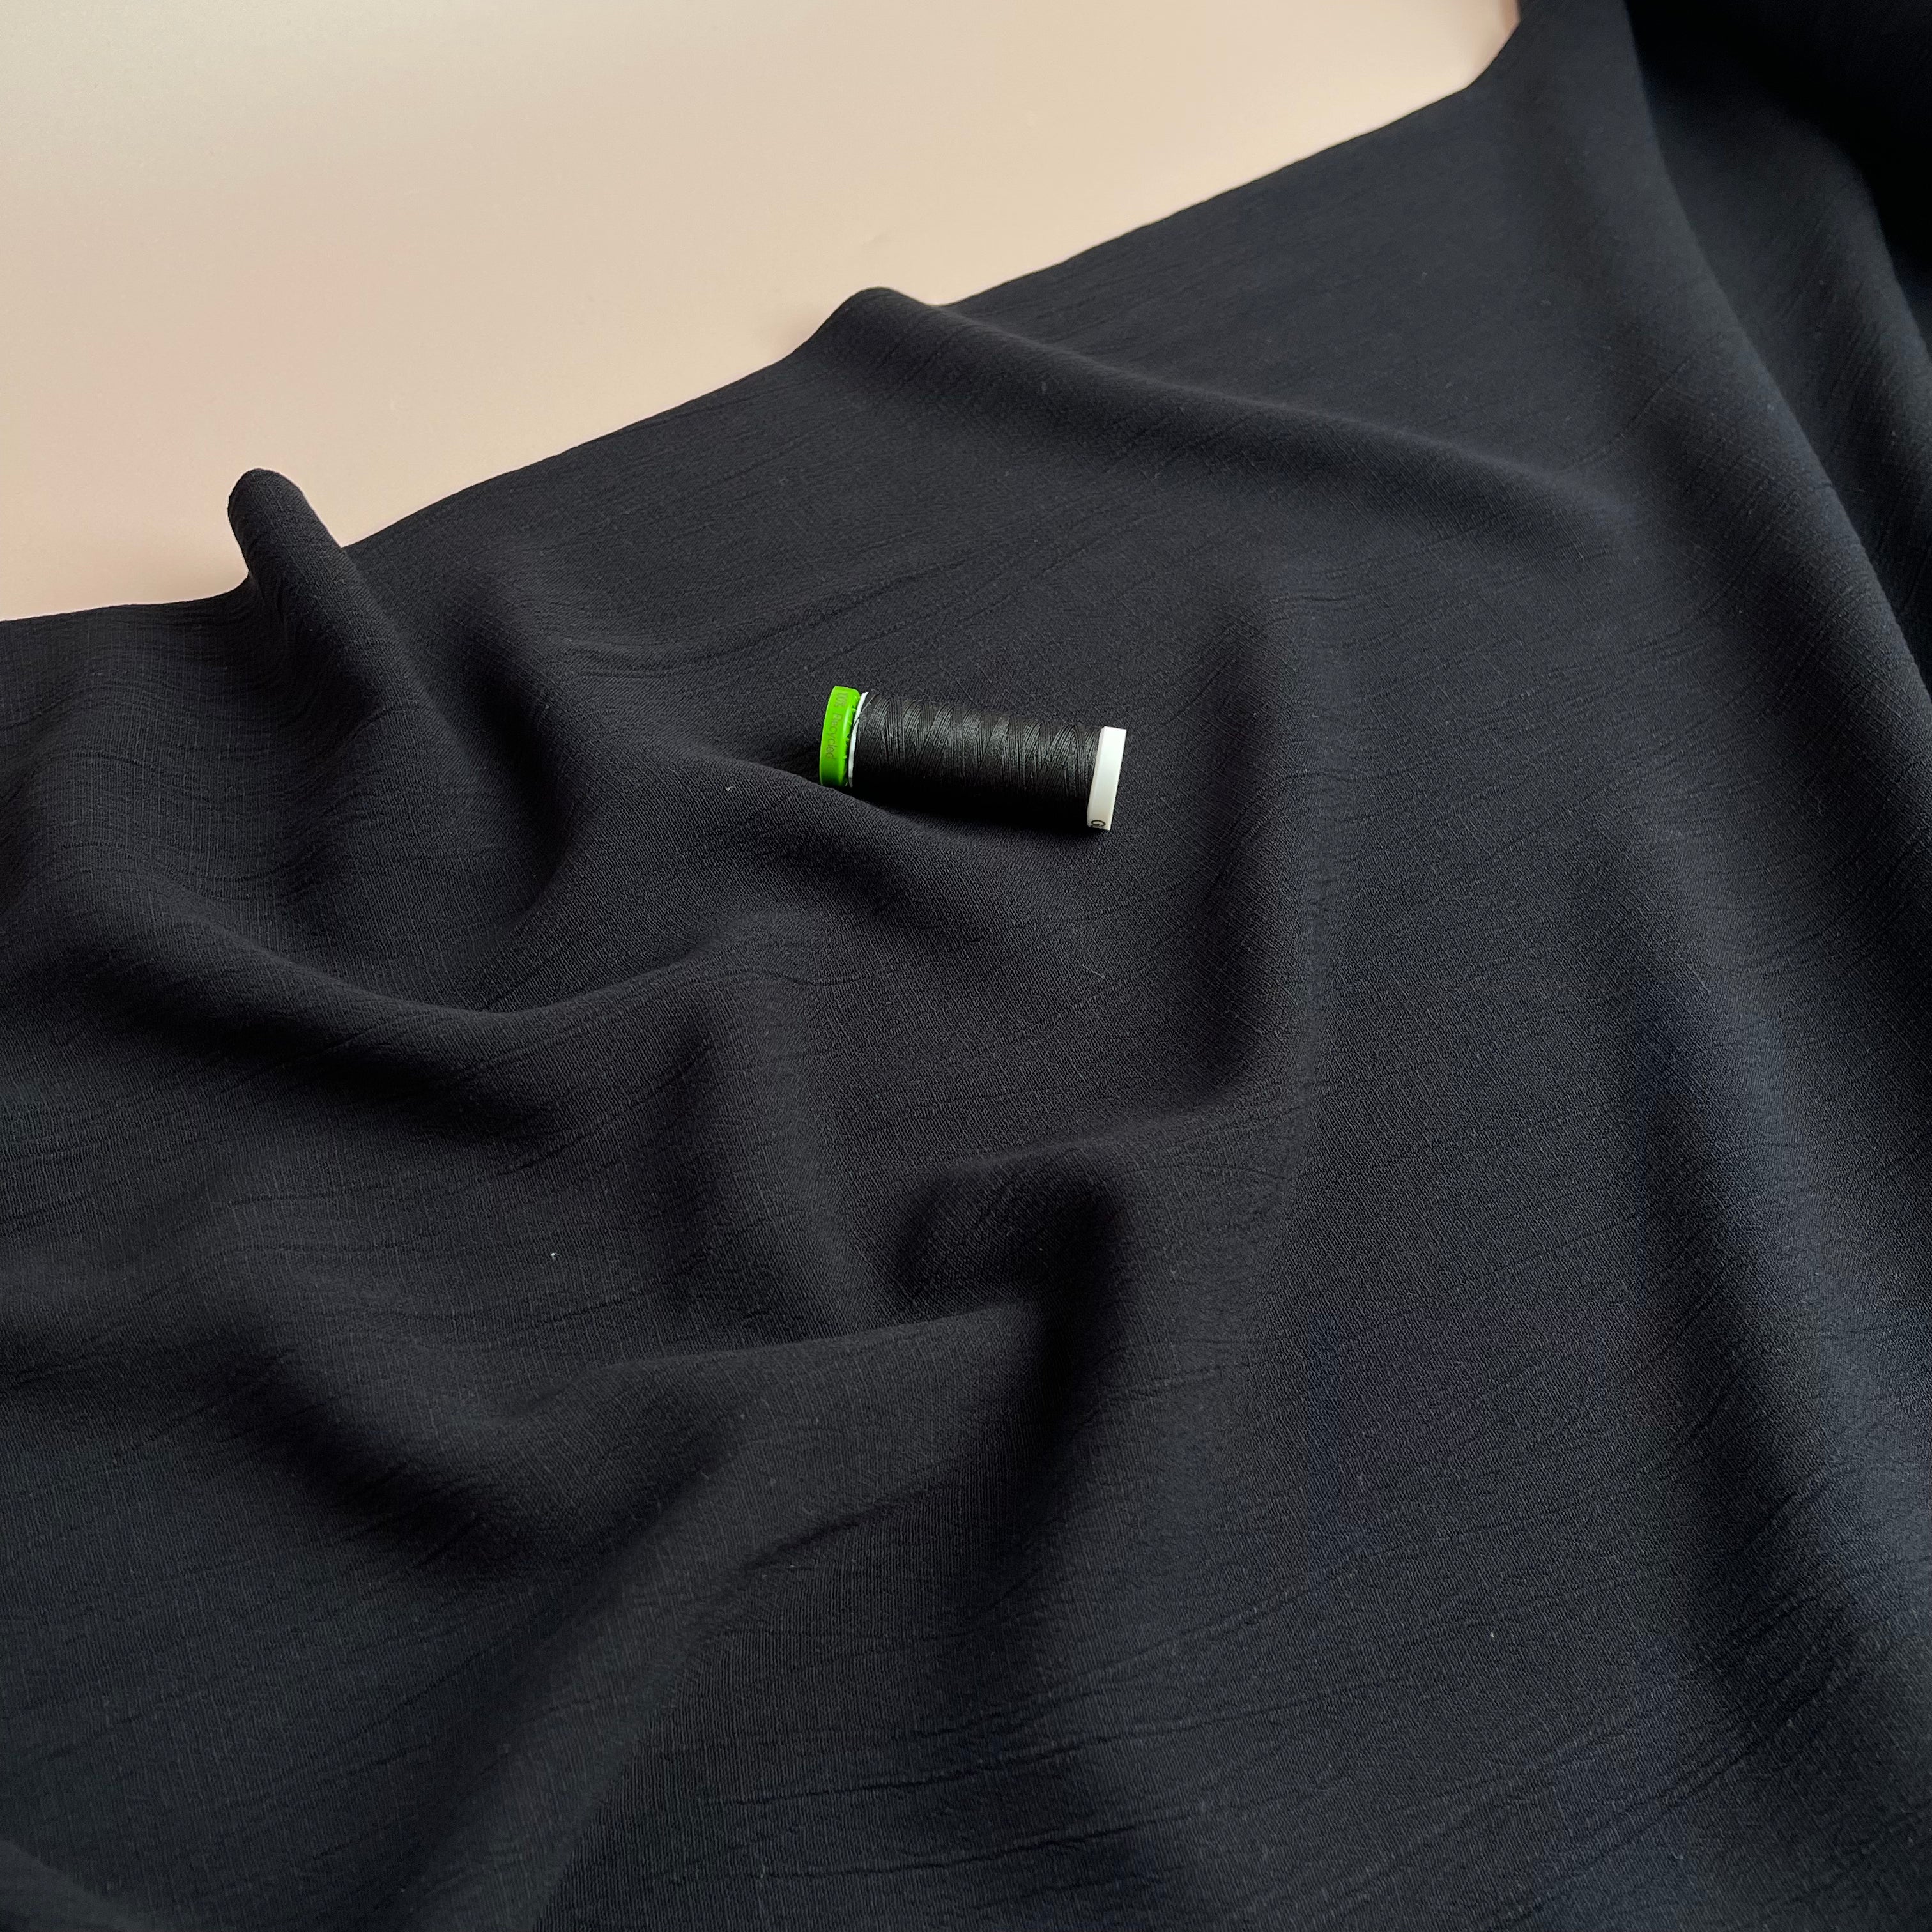 REMNANT 0.52 Metre - Crinkle Viscose Linen Blend Fabric in Black